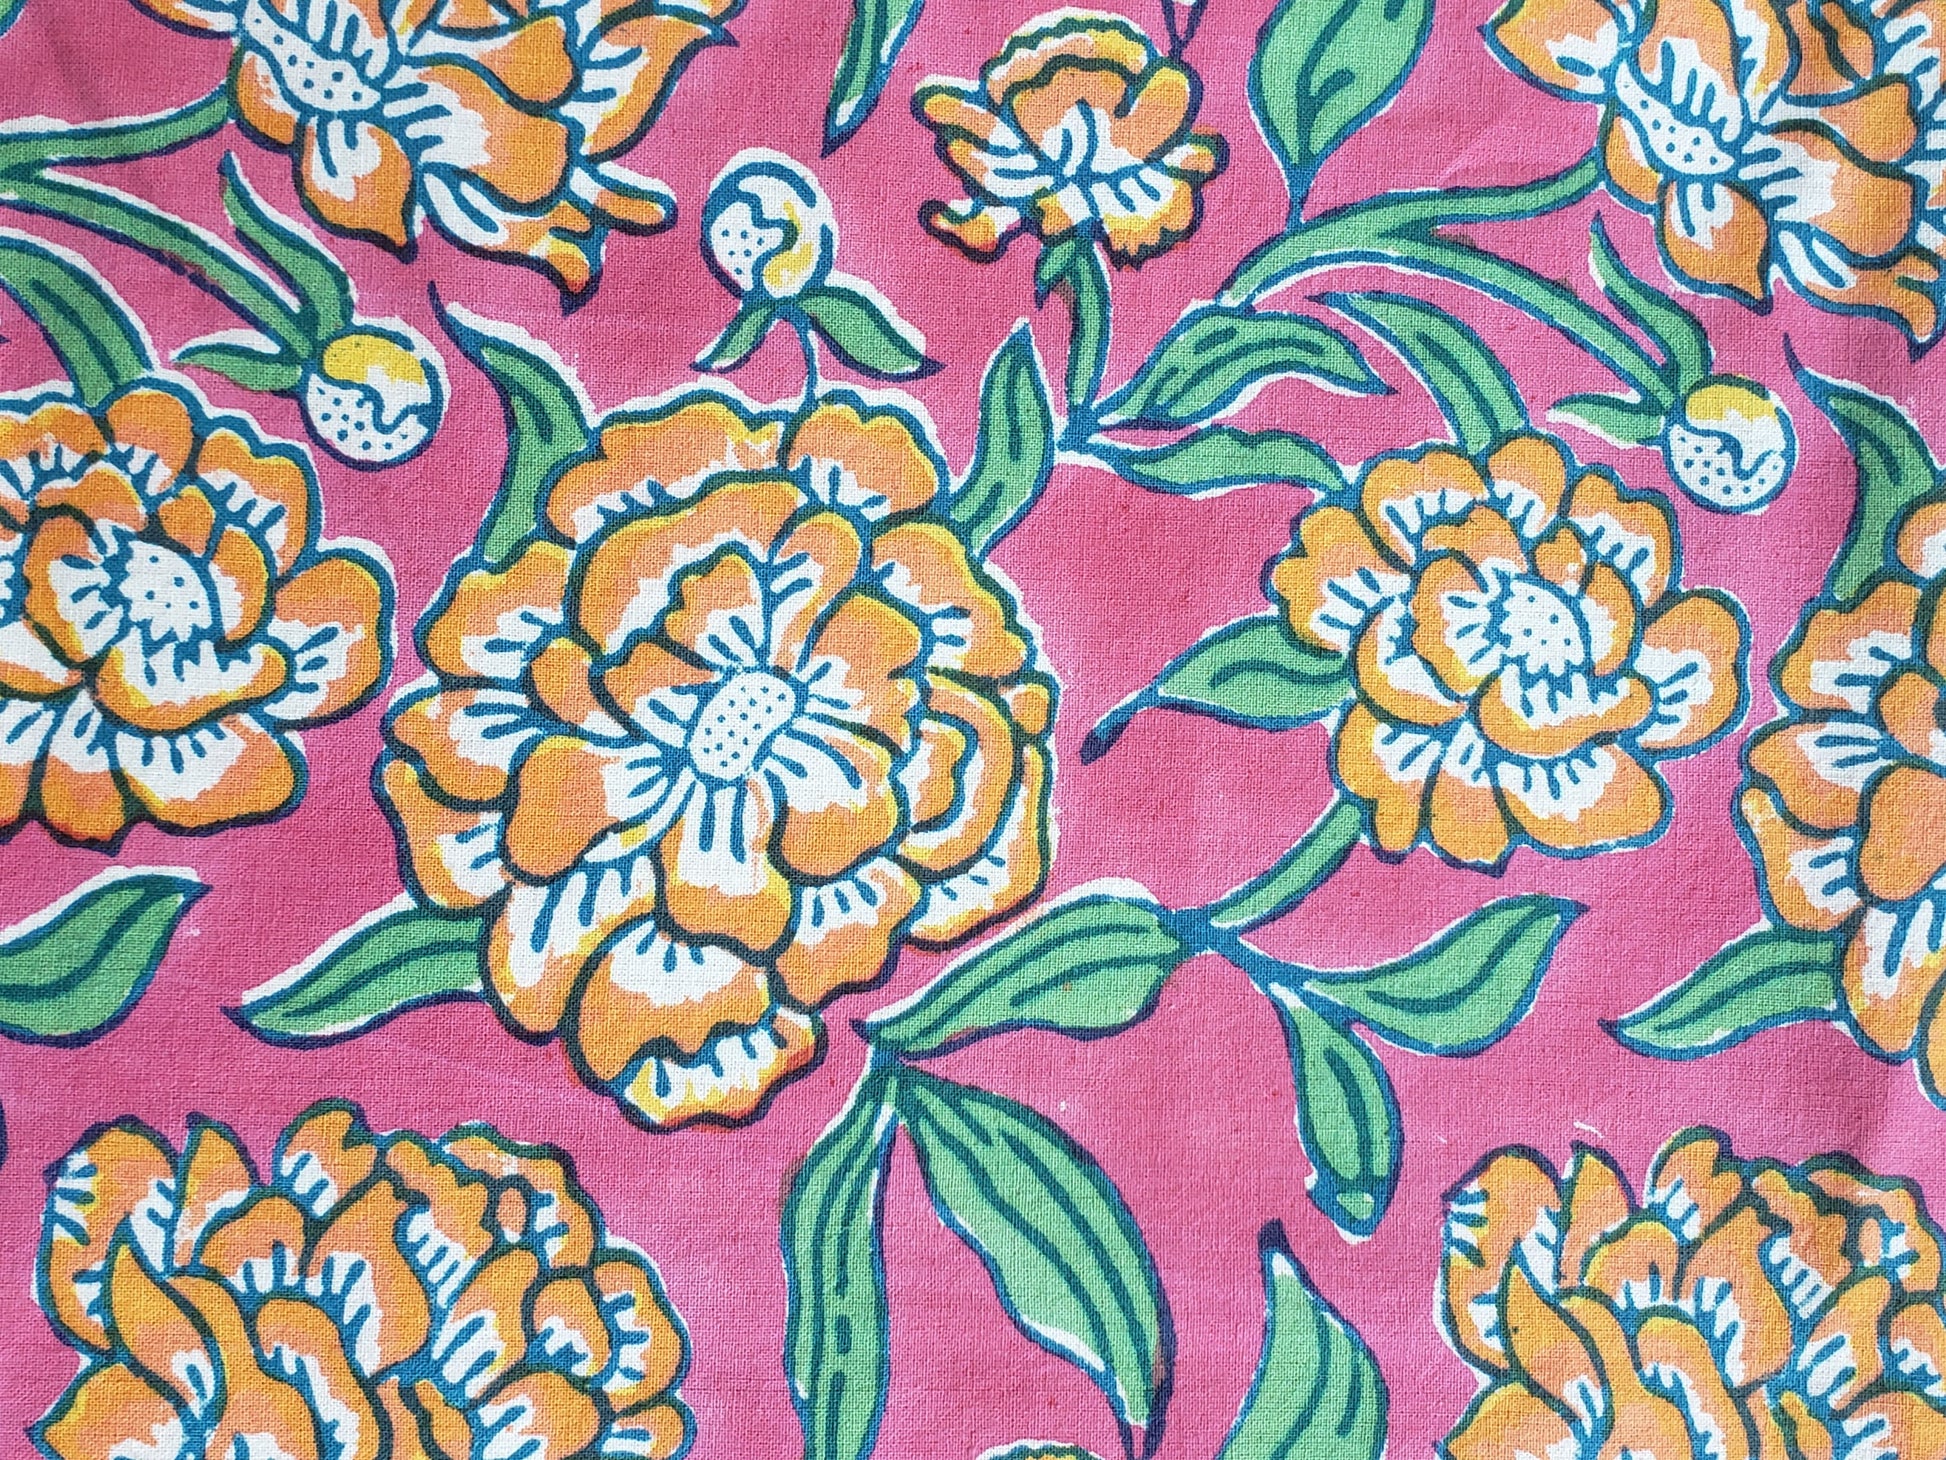 Sobrecama 100% algodón estampado a mano, base rosa con flores naranjas y tallos verdes. Hecho en la India.